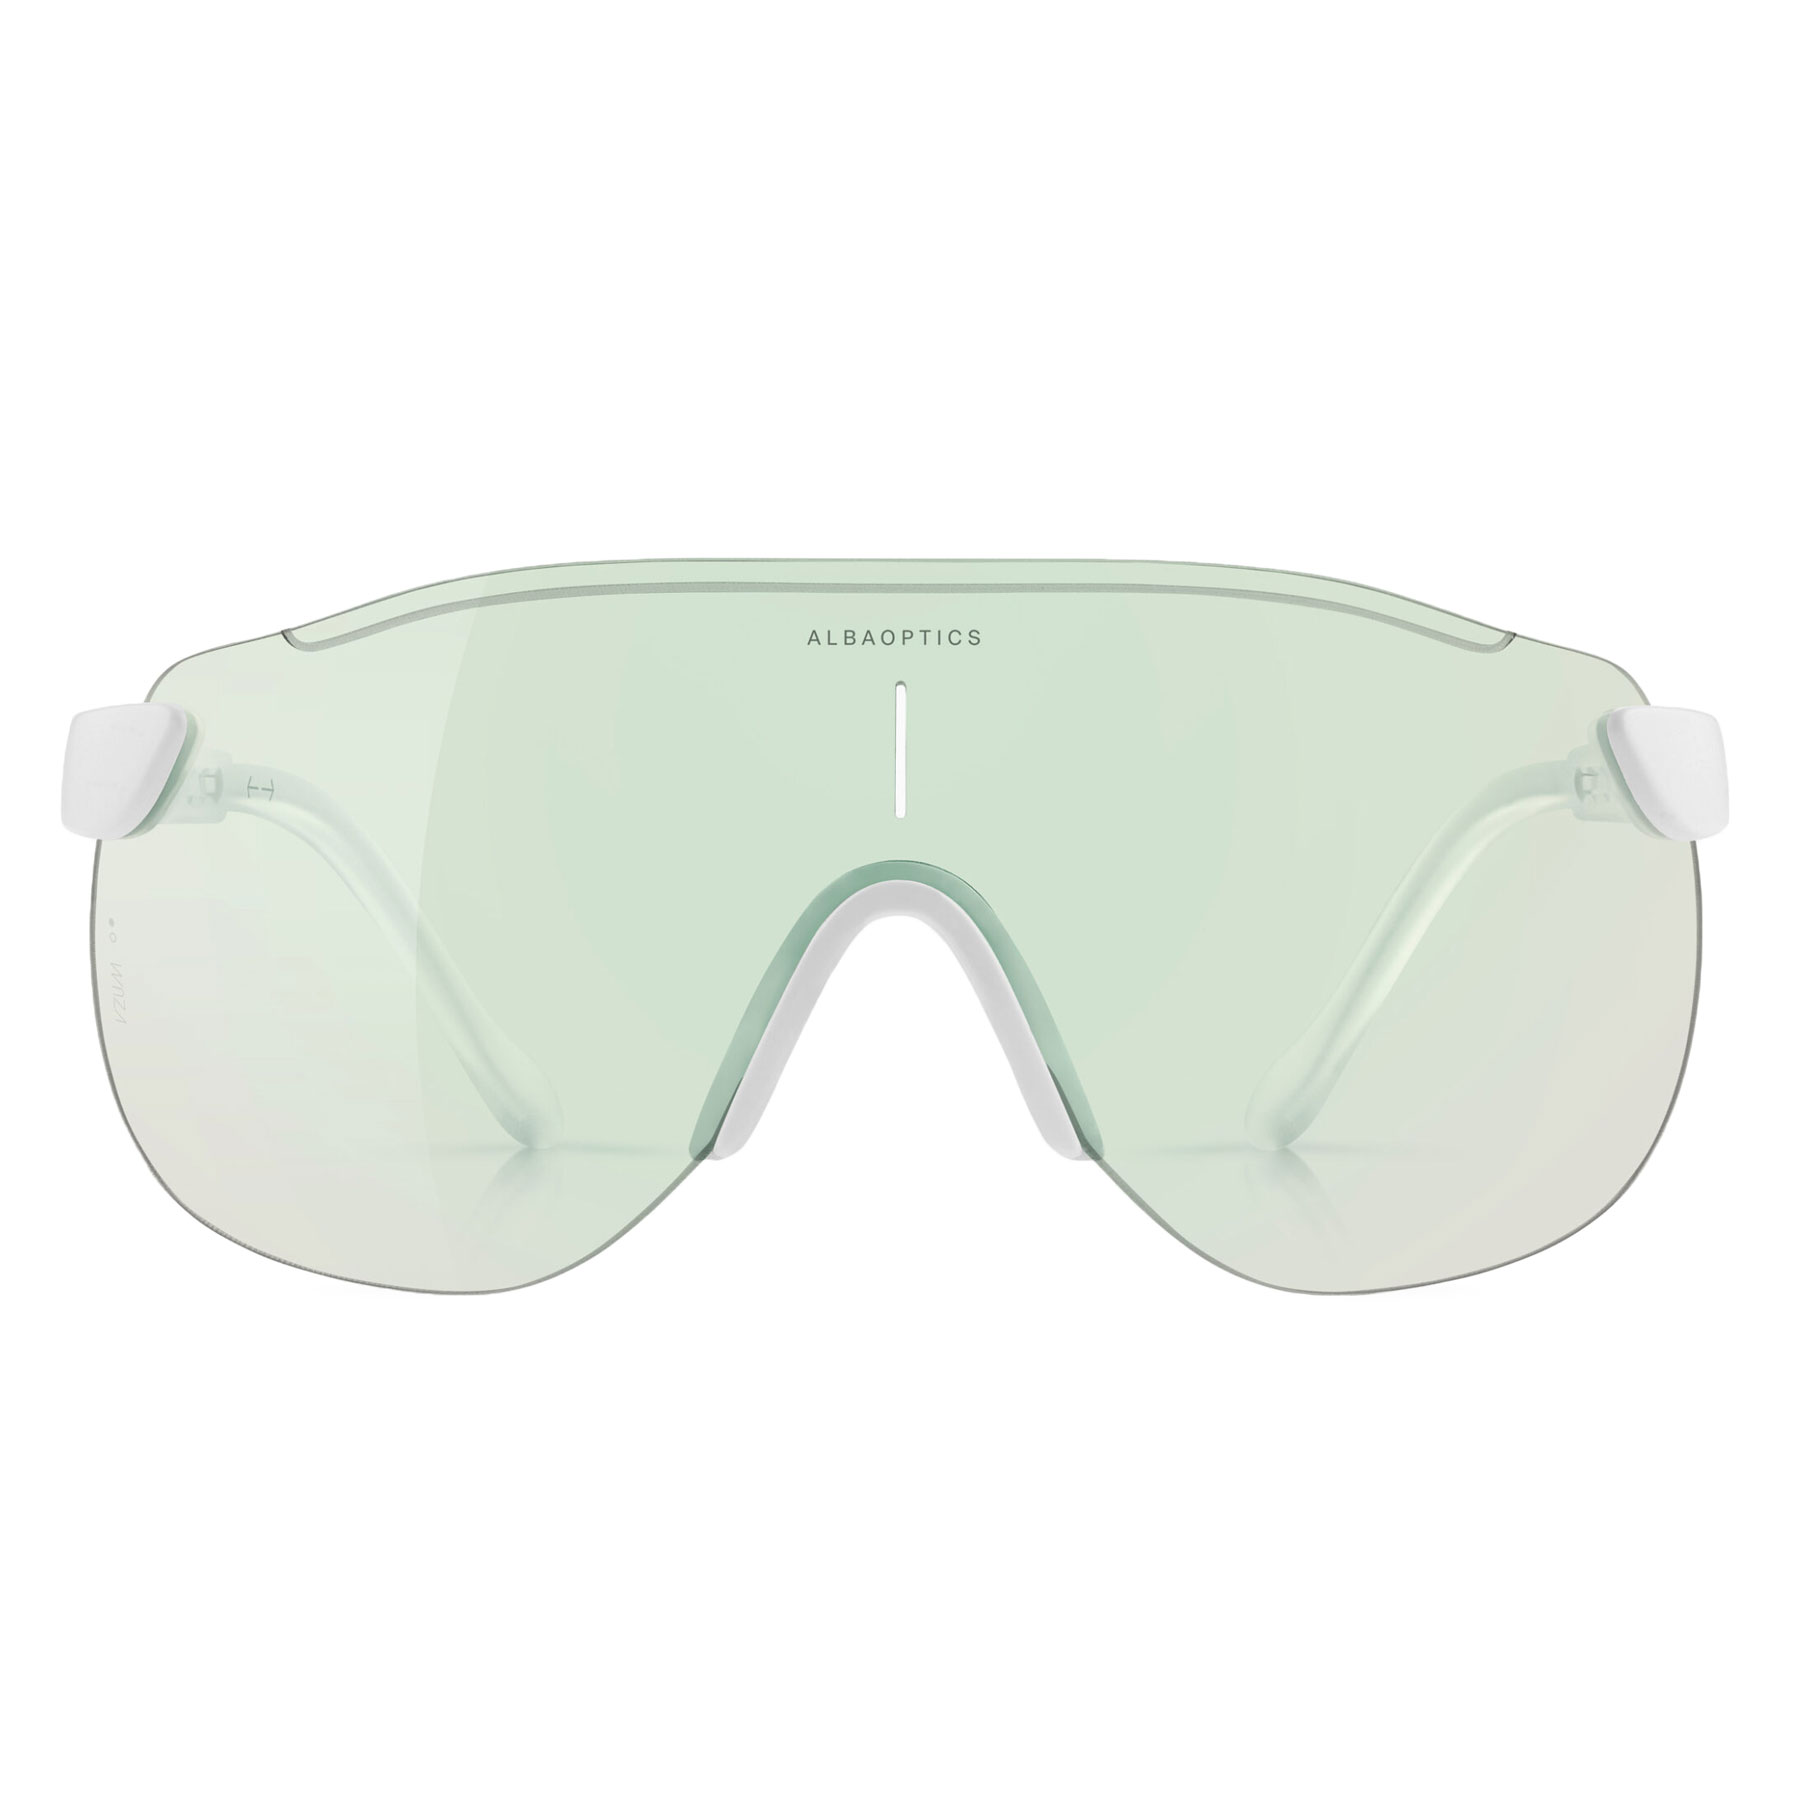 Produktbild von ALBA Stratos Brille - Weiß / VZUM F-LENS BEETLE